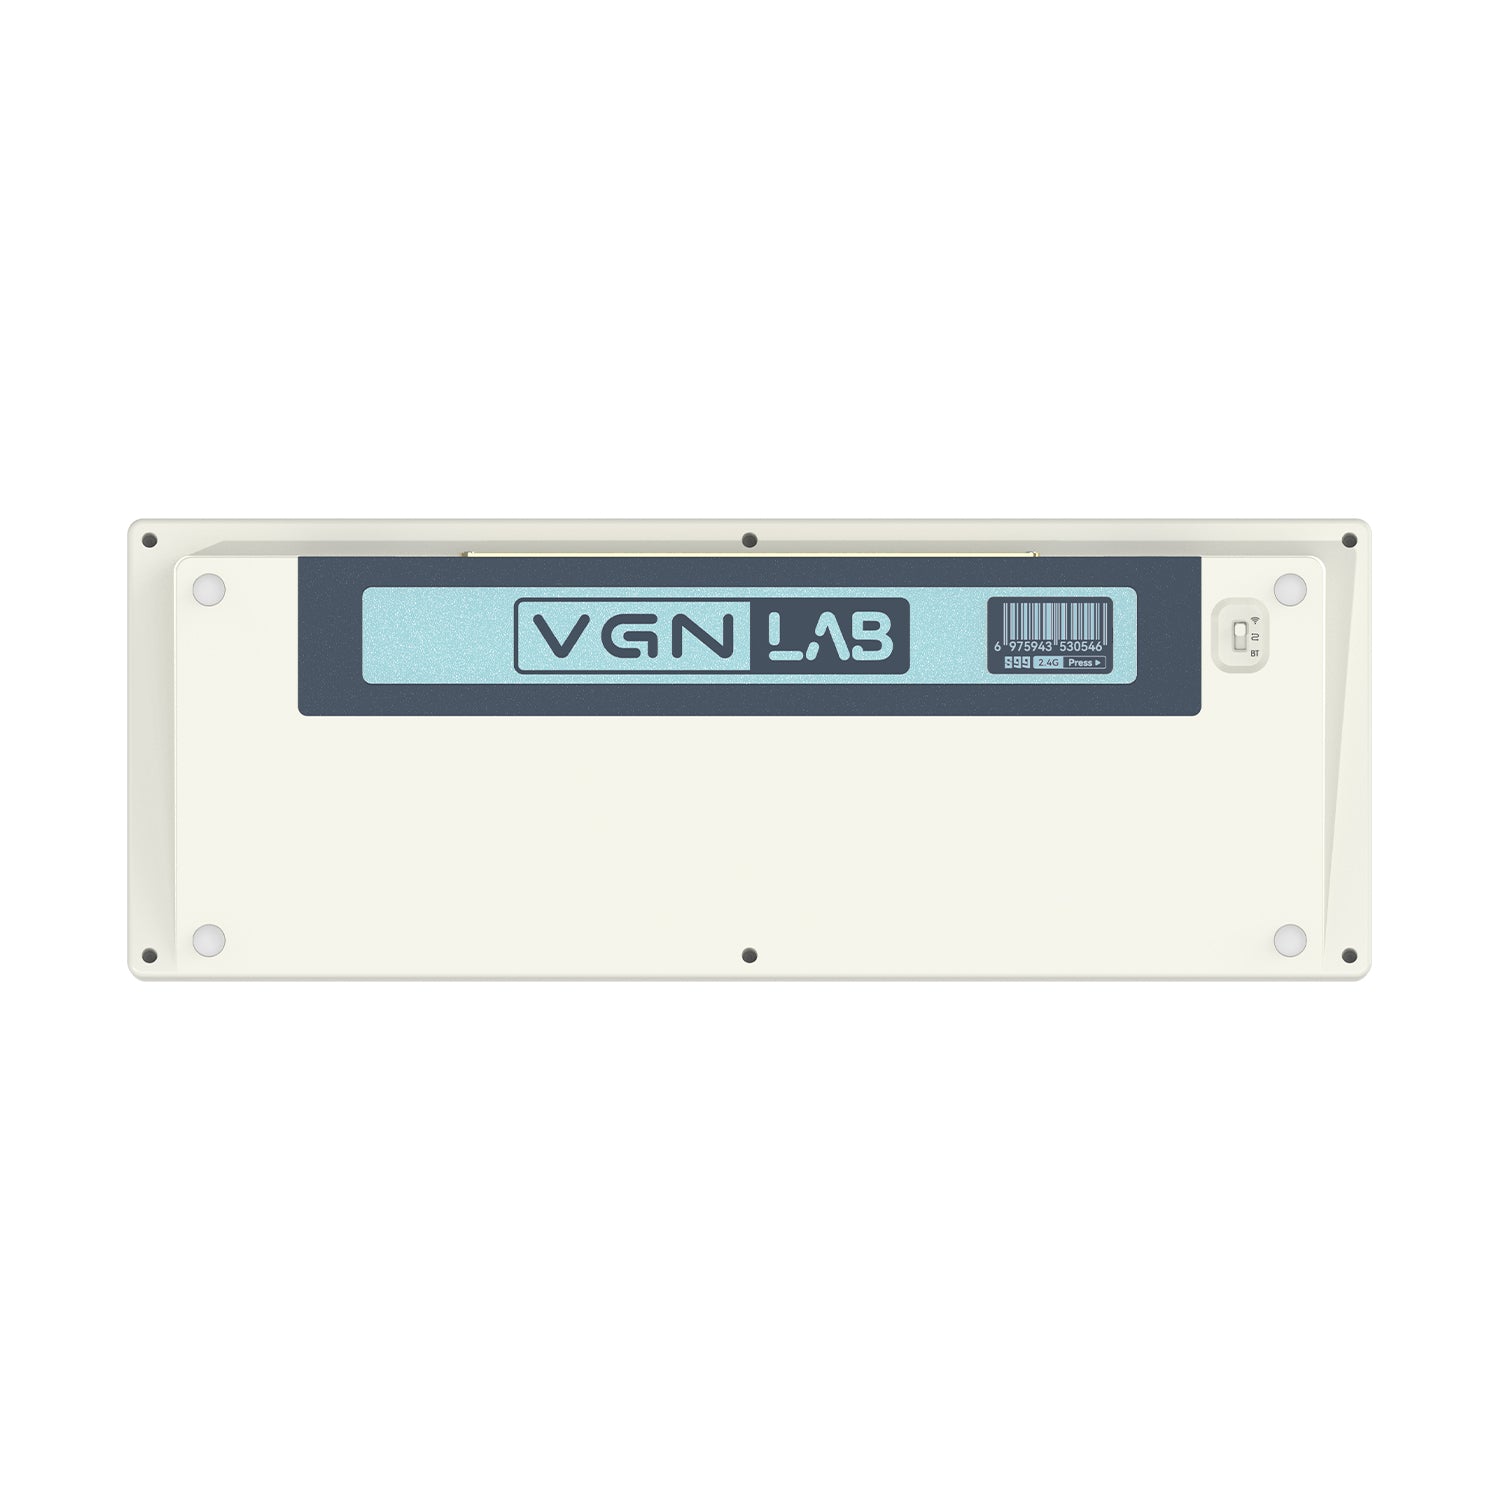 VGN S99 Wireless Mechanical Keyboard